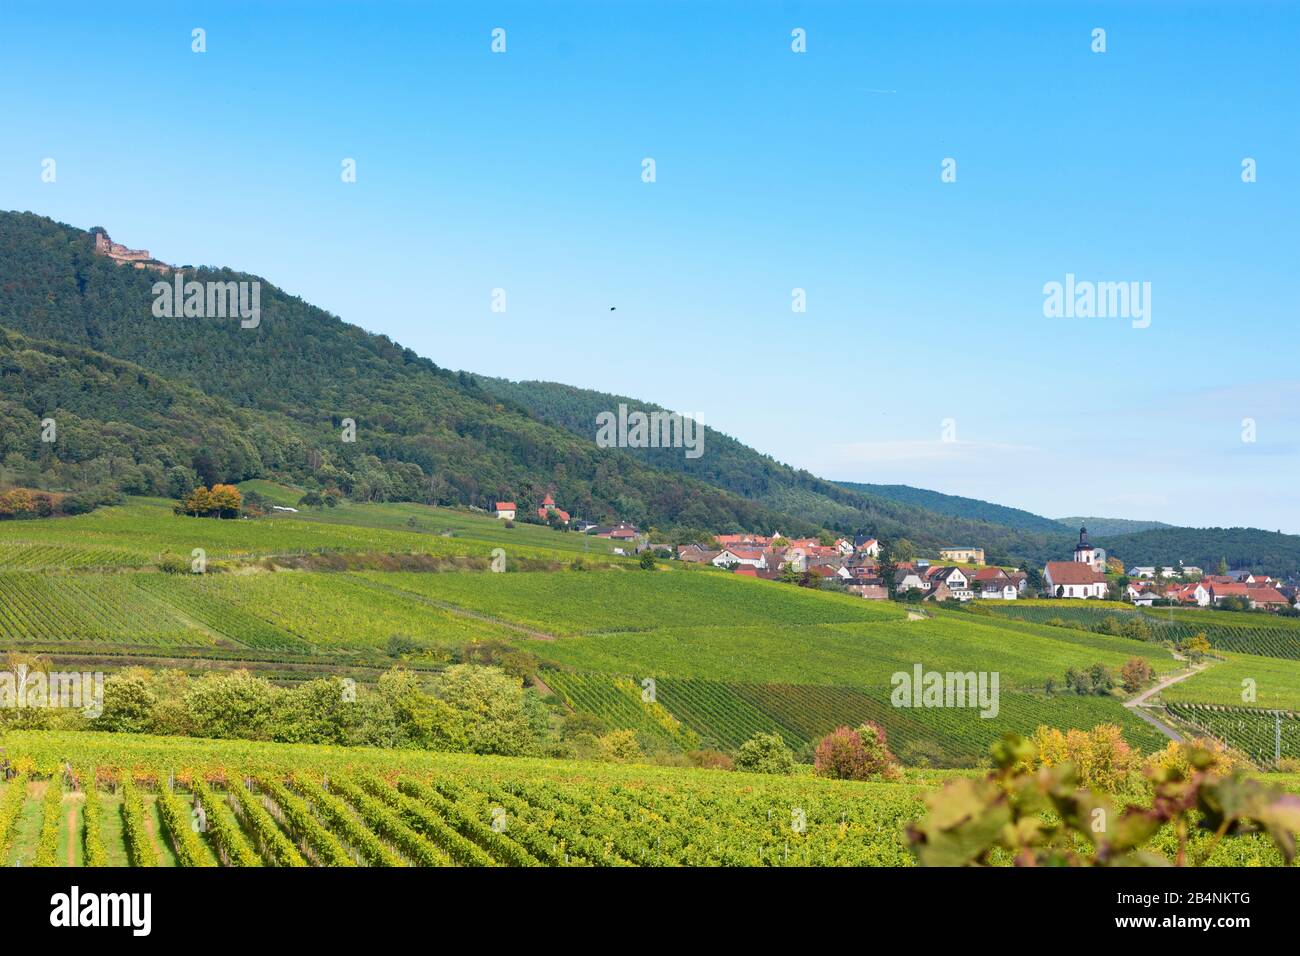 Weyher in der Pfalz, village Weyher in der Pfalz, castle Rietburg, vineyard at Deutsche Weinstraße ( German Wine Route ), Rhineland-Palatinate, Germany Stock Photo